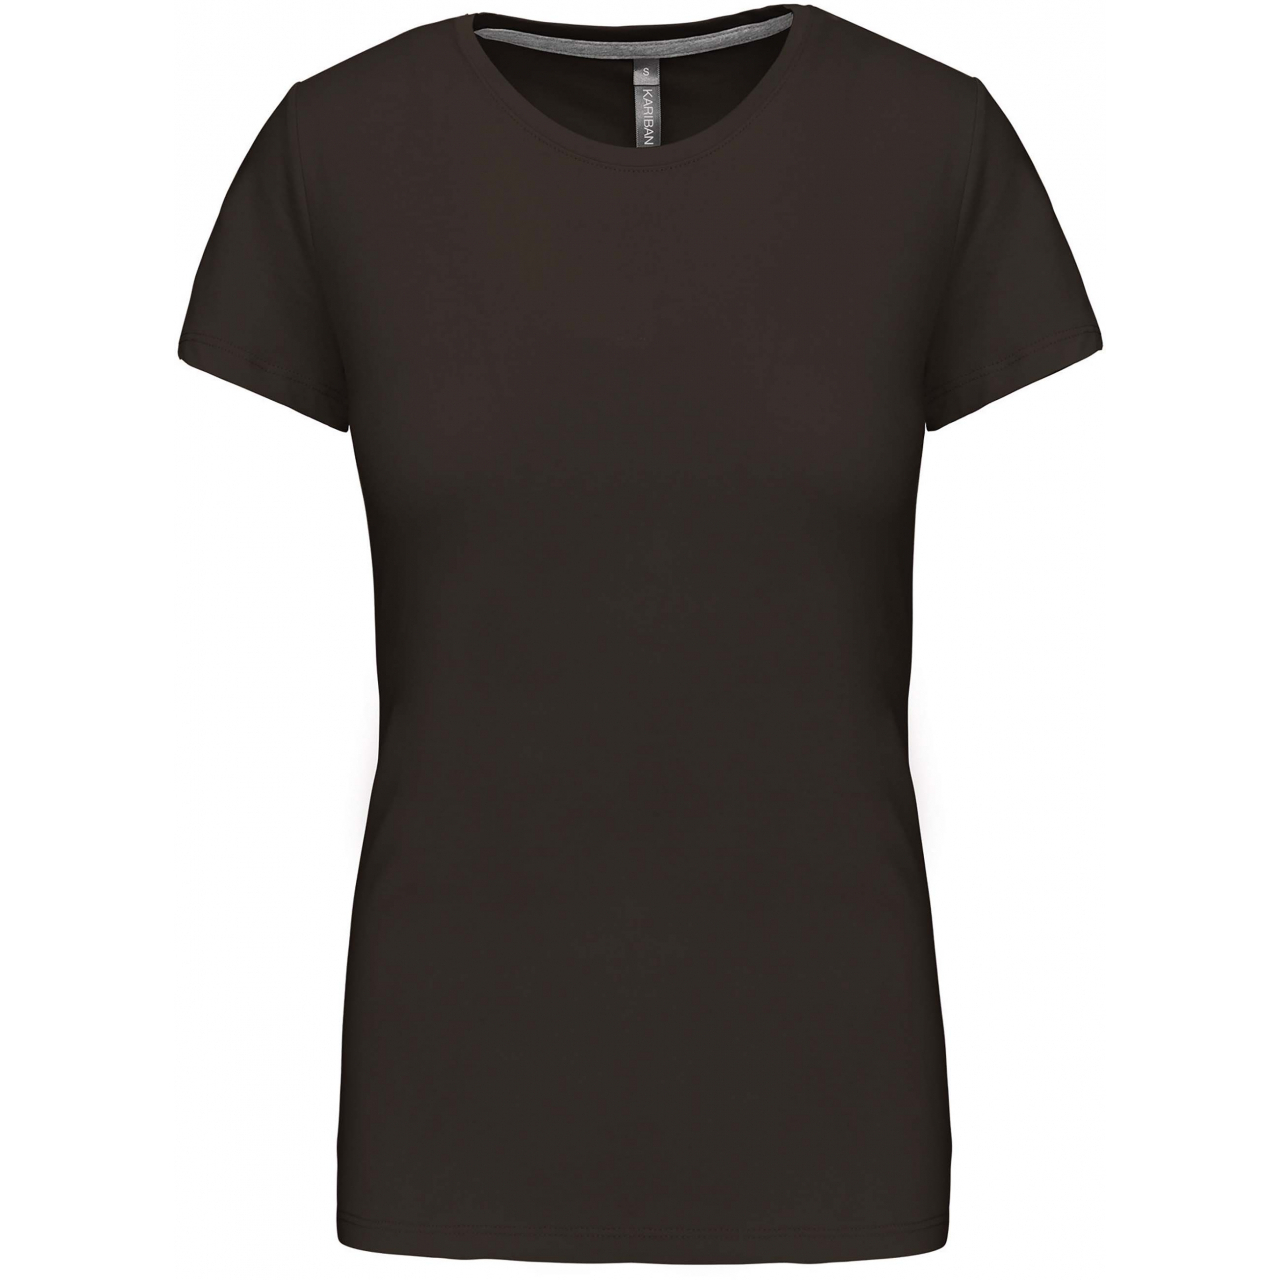 Dámské tričko Kariban s krátkým rukávem - tmavé khaki, XXL